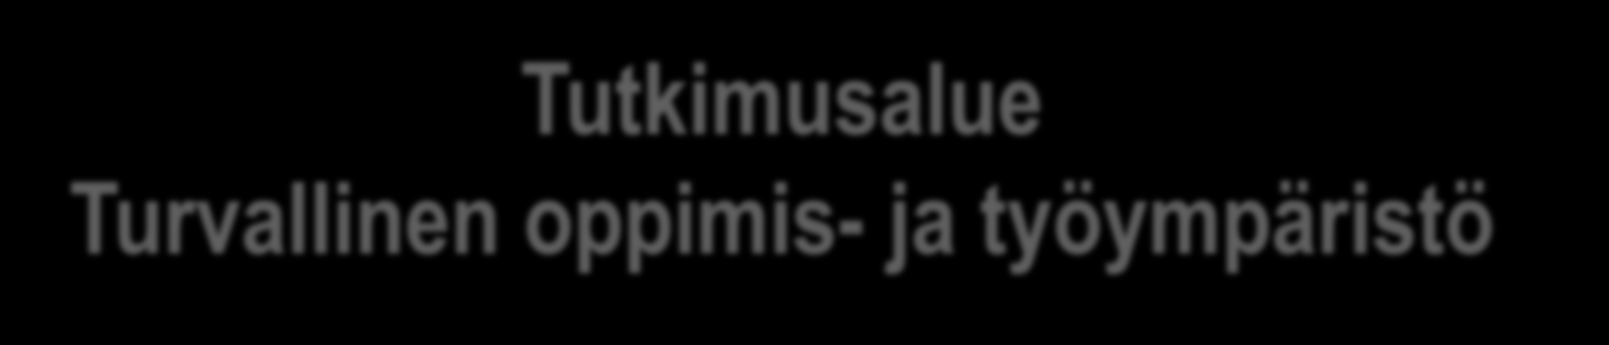 Tutkimusalue Turvallinen oppimis- ja työympäristö Julkaisuja, esim. Kallio, M. (2014). Riskivastuullisuus turvallisuuskasvatuksen kulttuurissa.